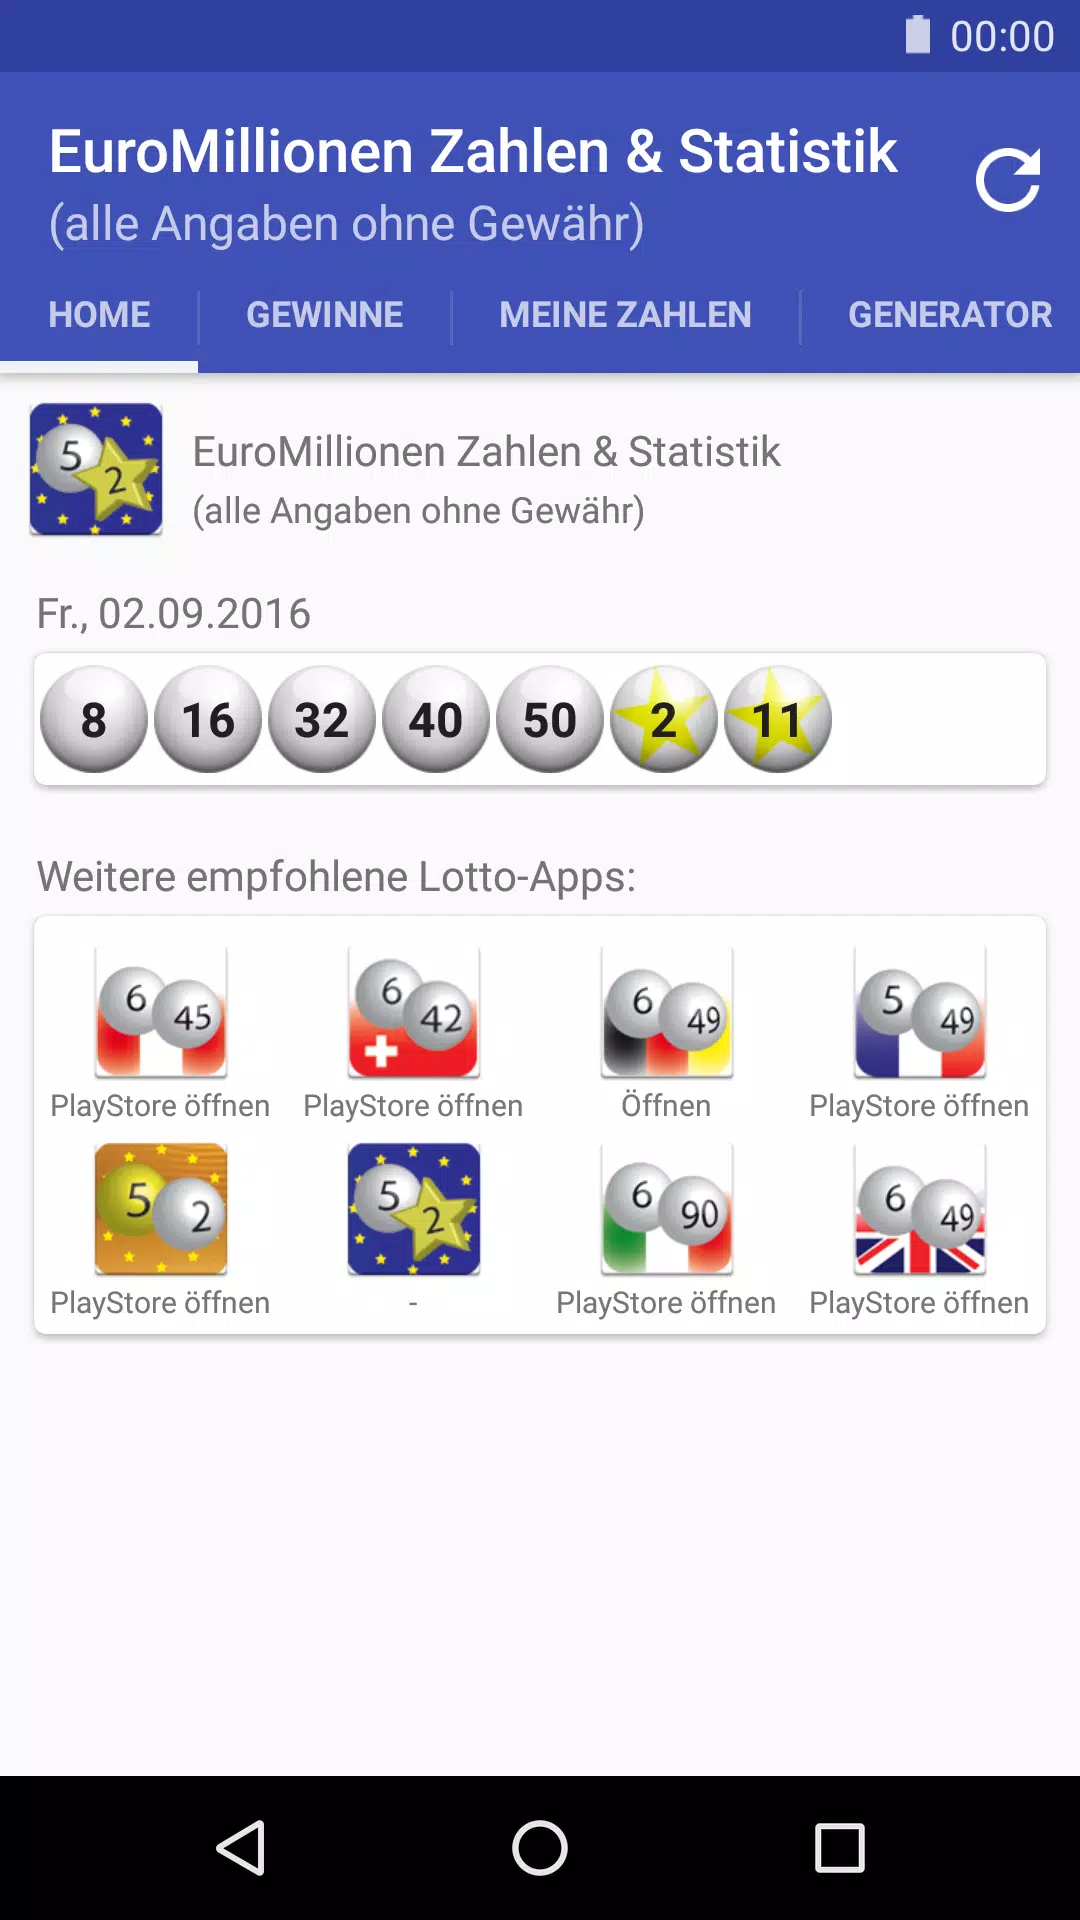 EuroMillionen Zahlen & Statistik für Android - APK herunterladen